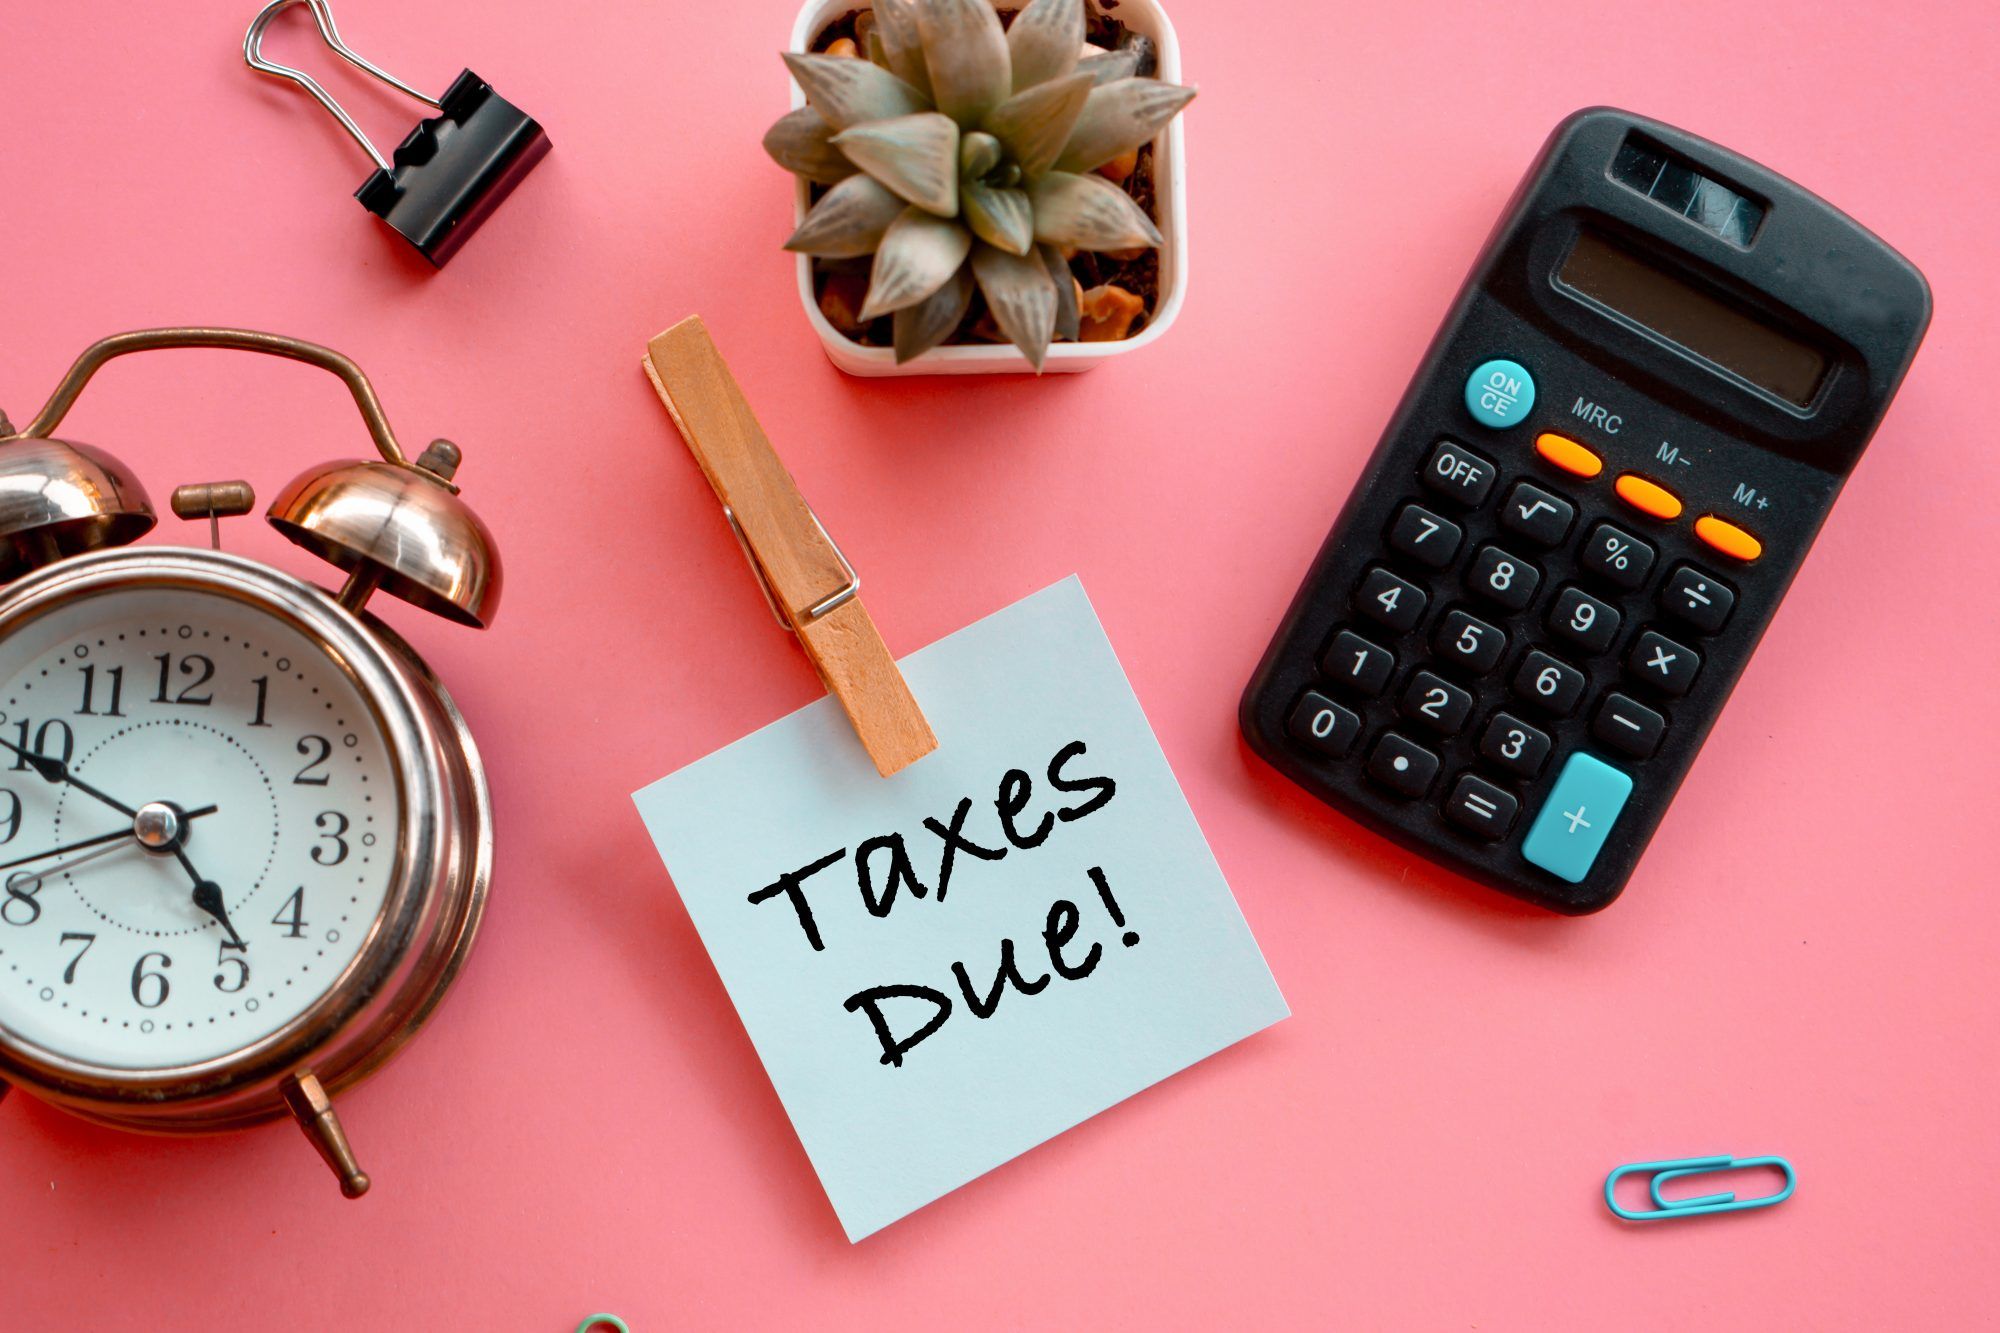 IRS säger att du nu kan vänta till den 17 maj med att skicka in dina skatter - men borde du göra det?